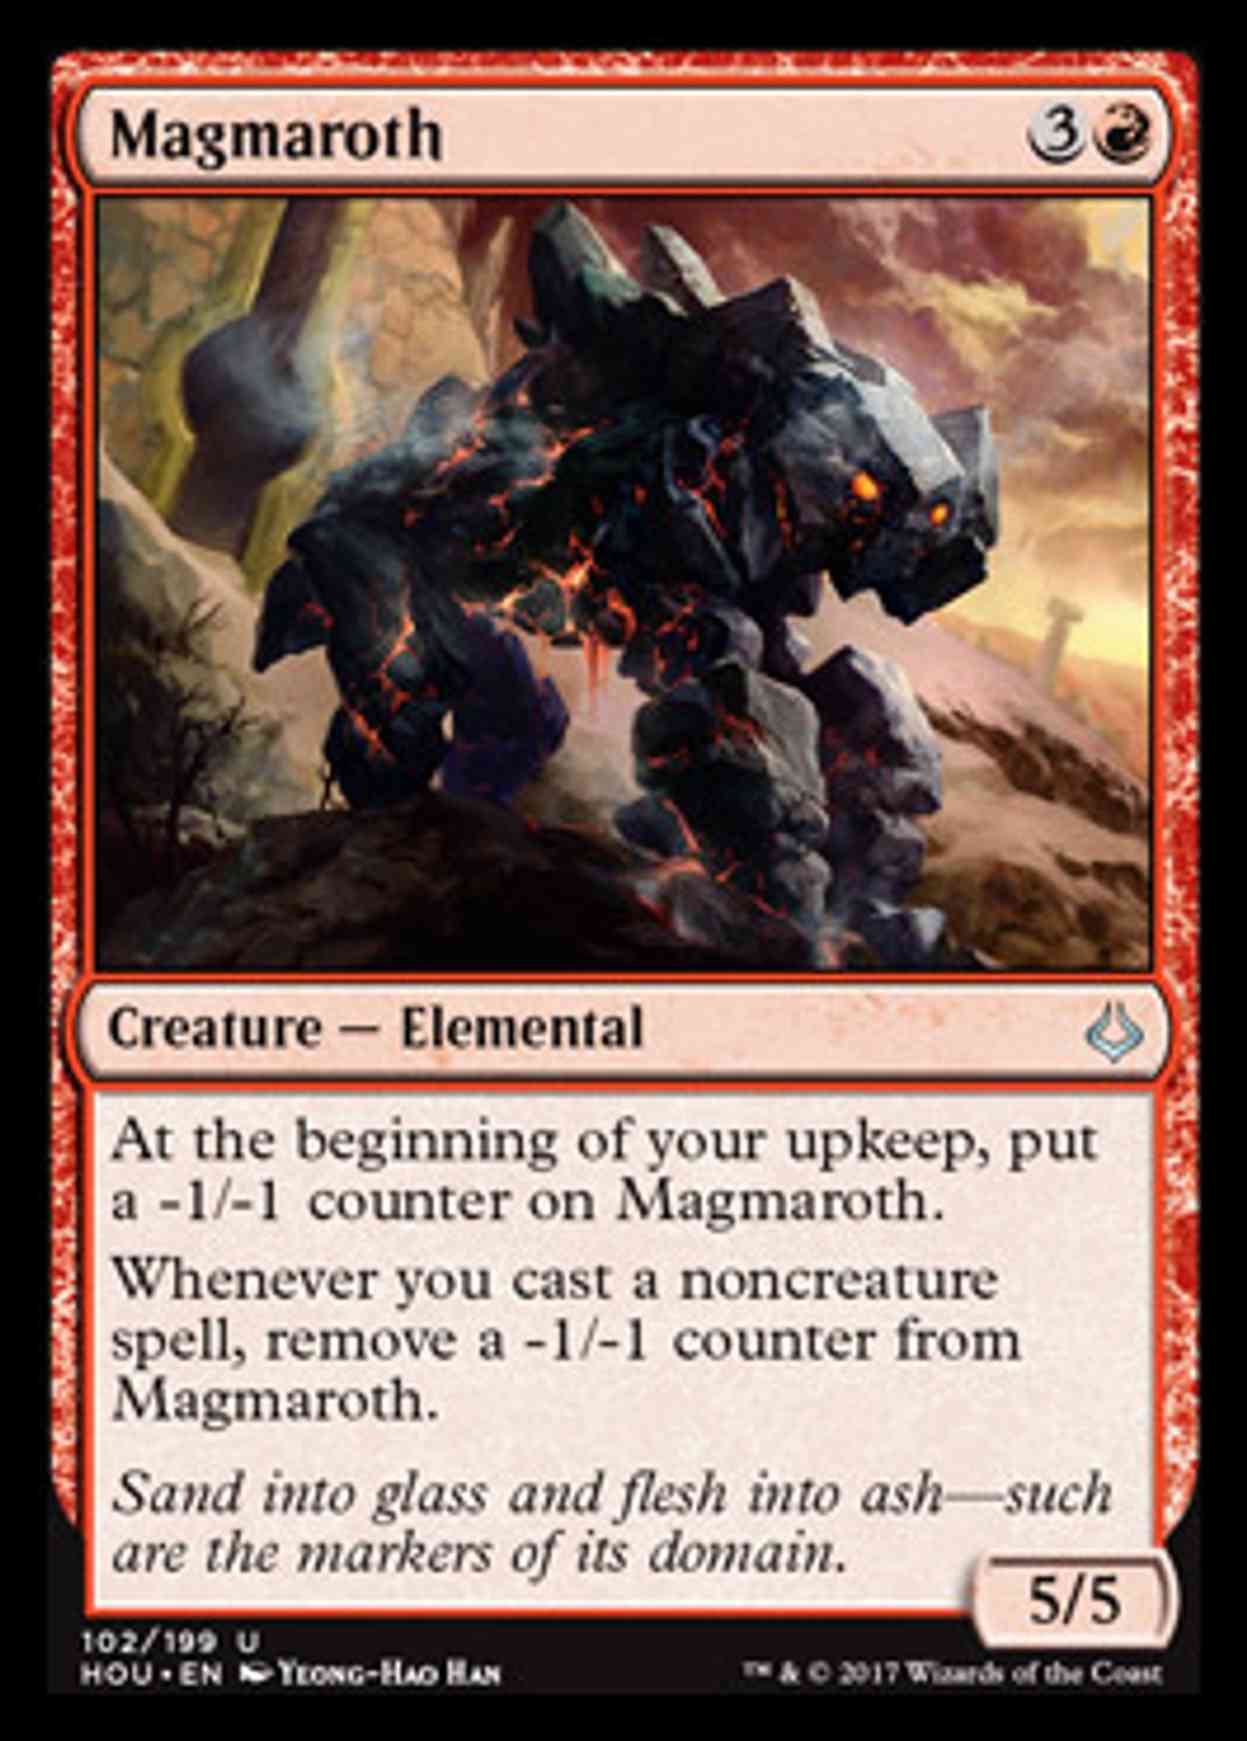 Magmaroth magic card front